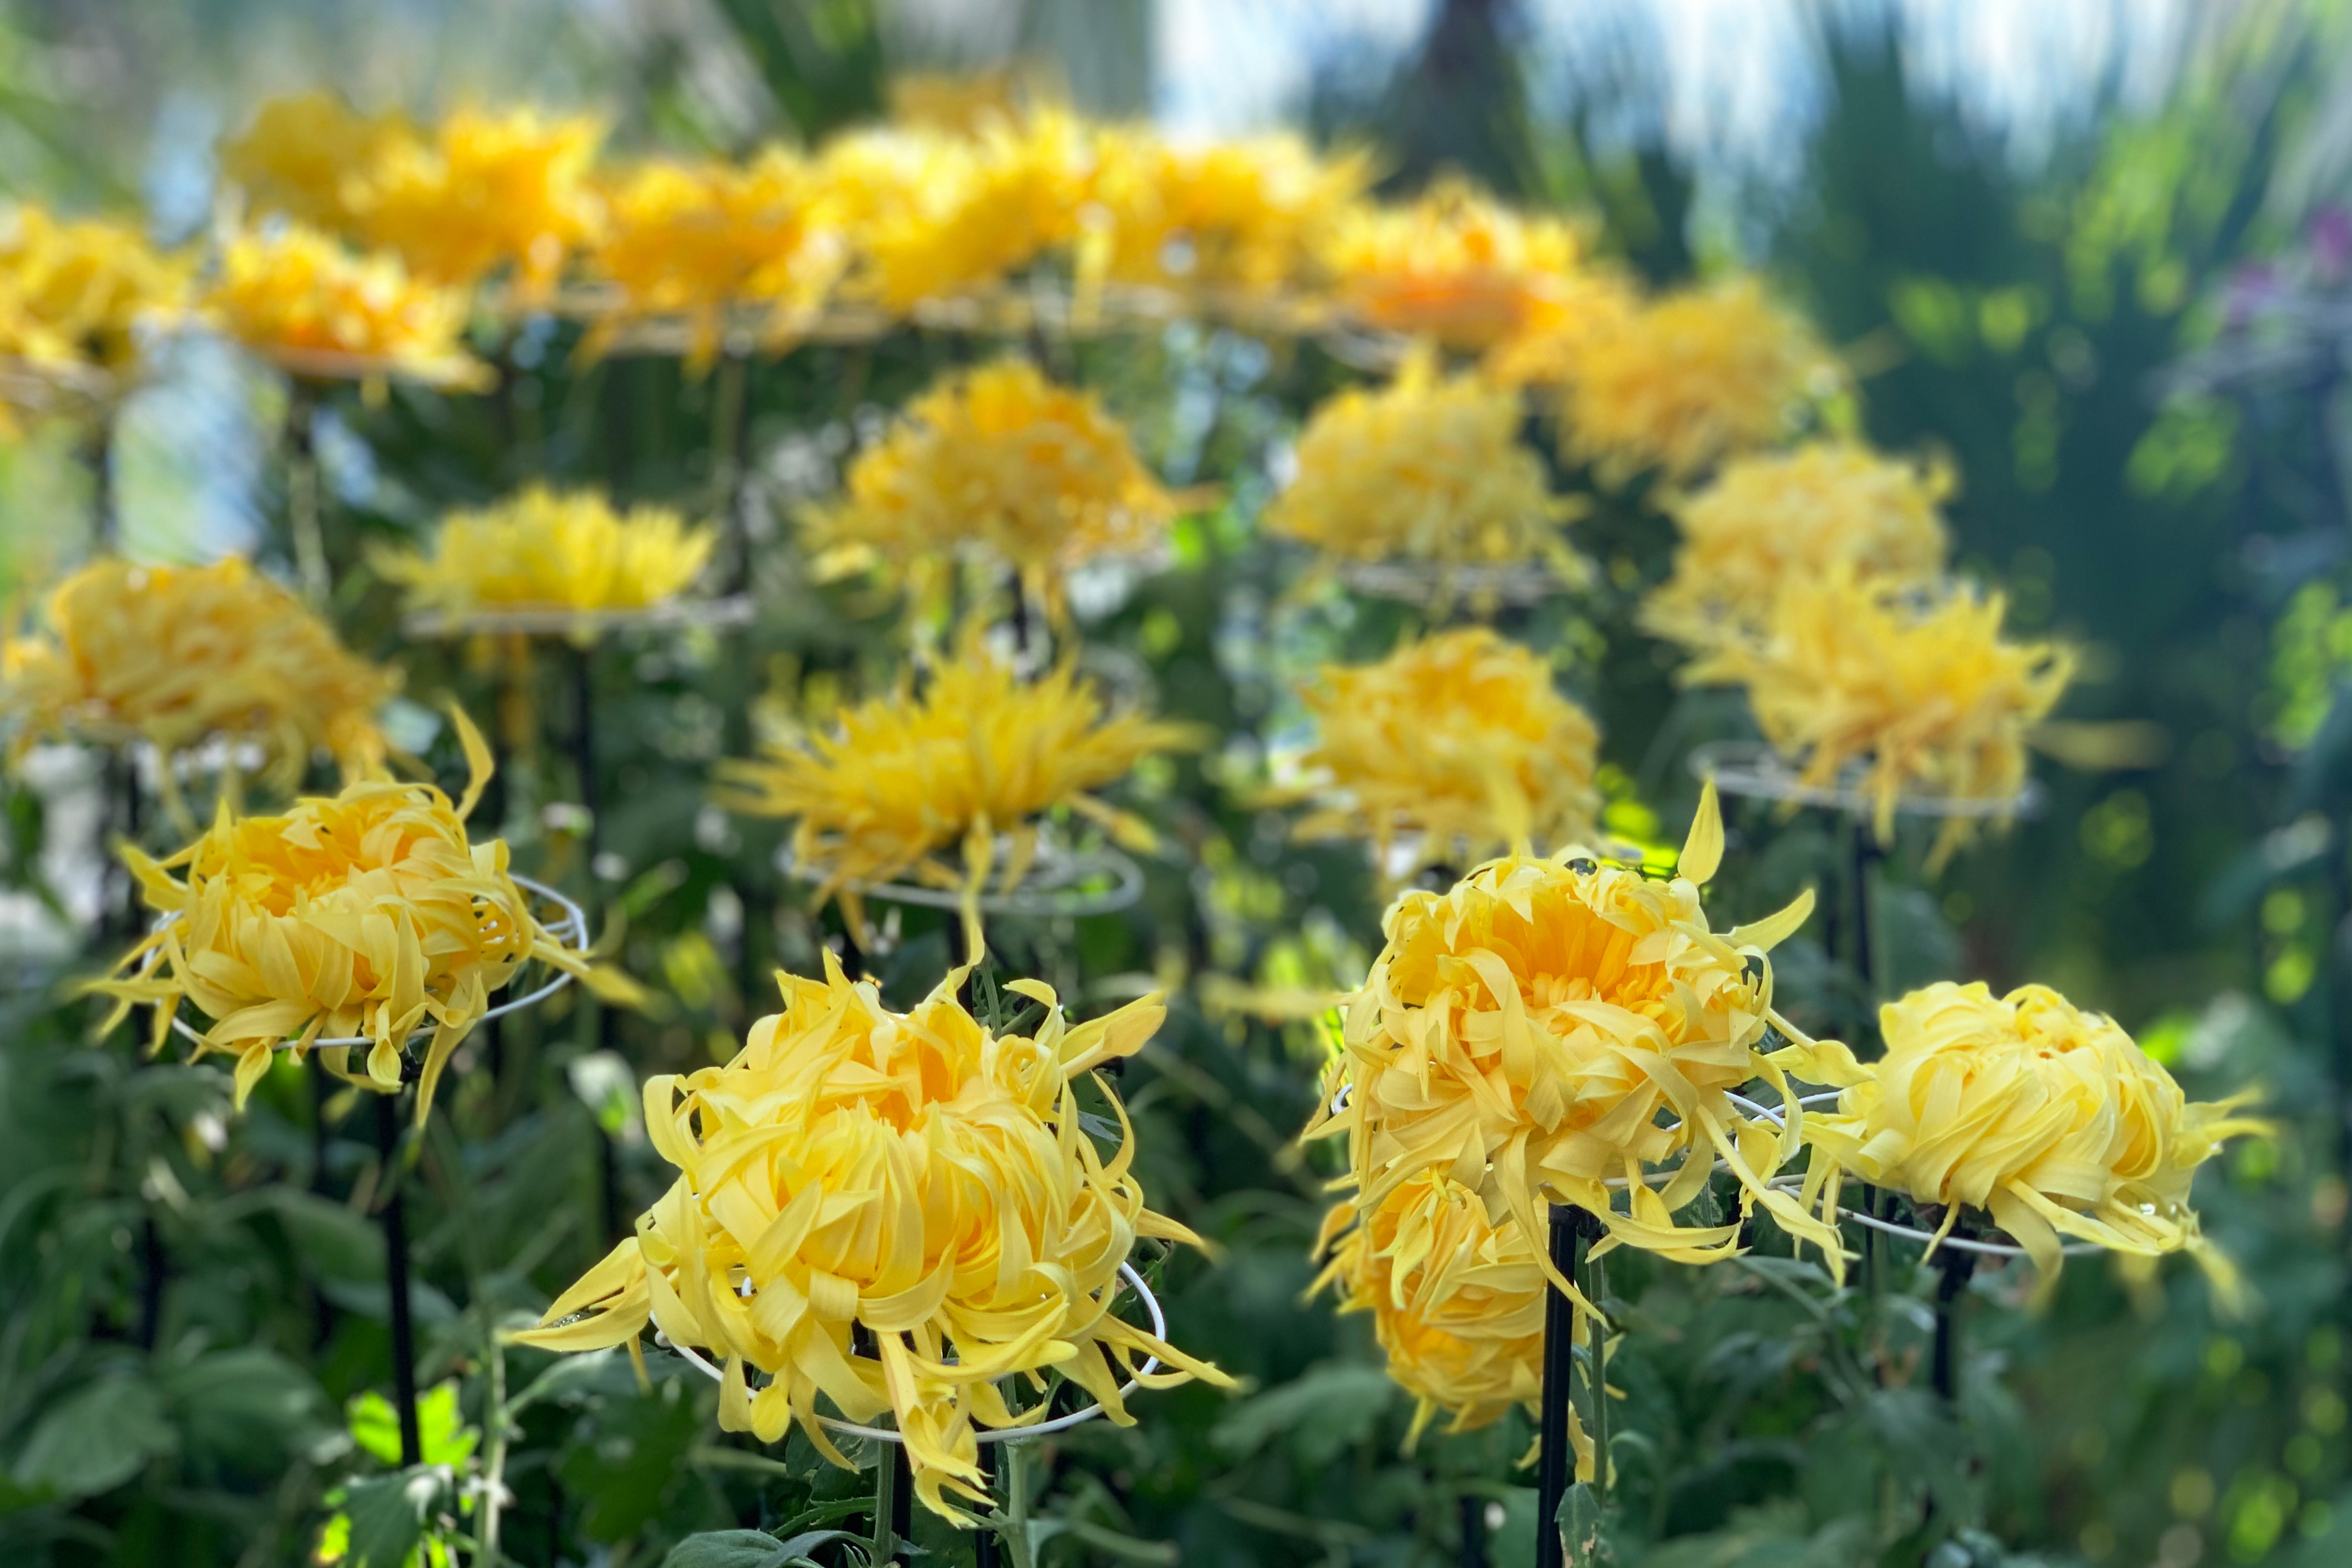 New York Botanical Garden kiku chrysanthemum display 2020